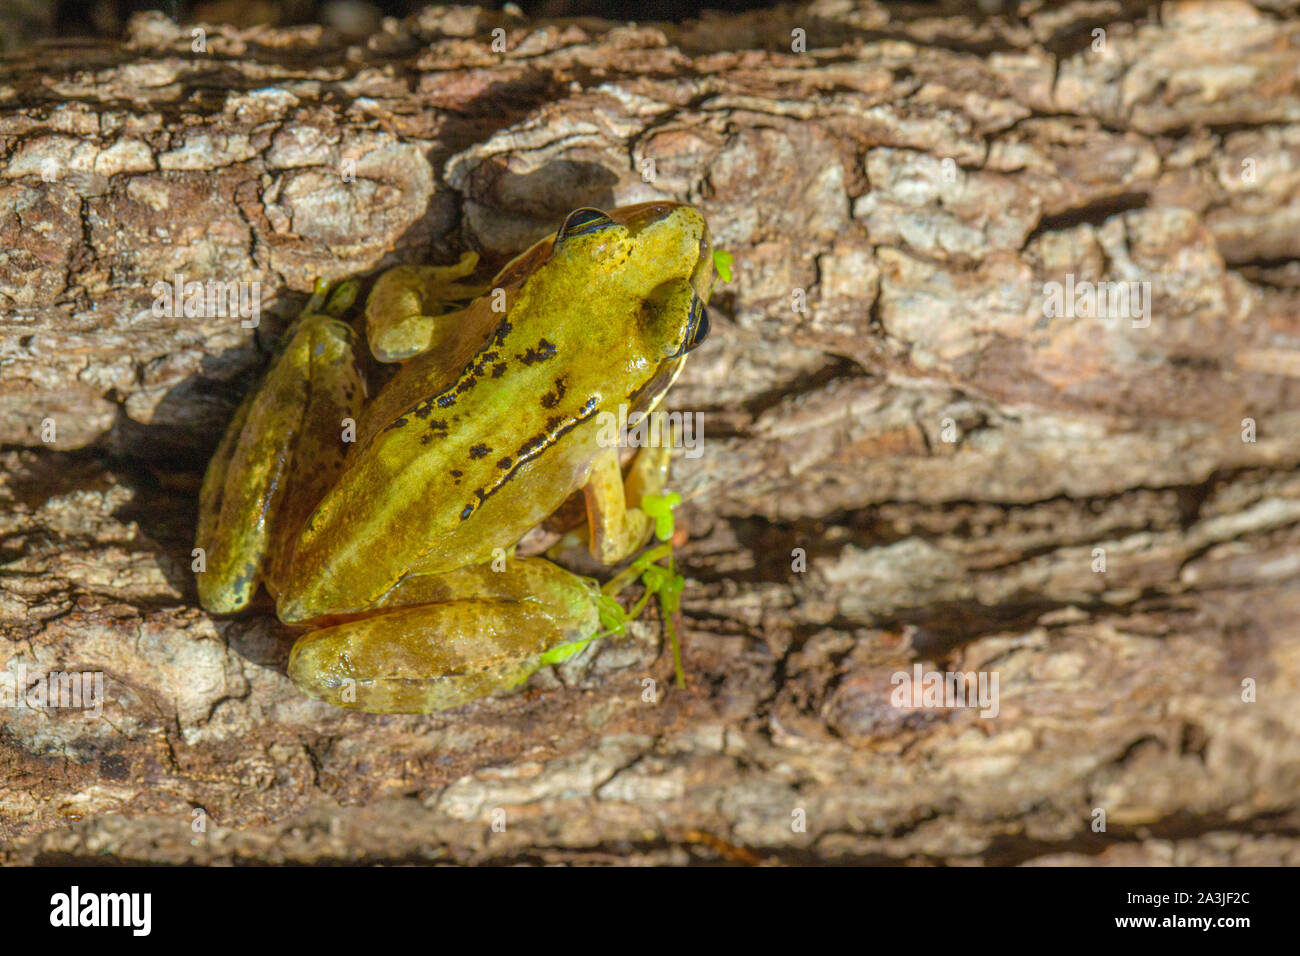 Grenouille Rousse (Rana temporaria). Suggestion d'une dorsale vert jaune pâle qui rappelle certains milieu stripe Pelophylax sp. Par exemple P. lessonae et esculentus. Banque D'Images